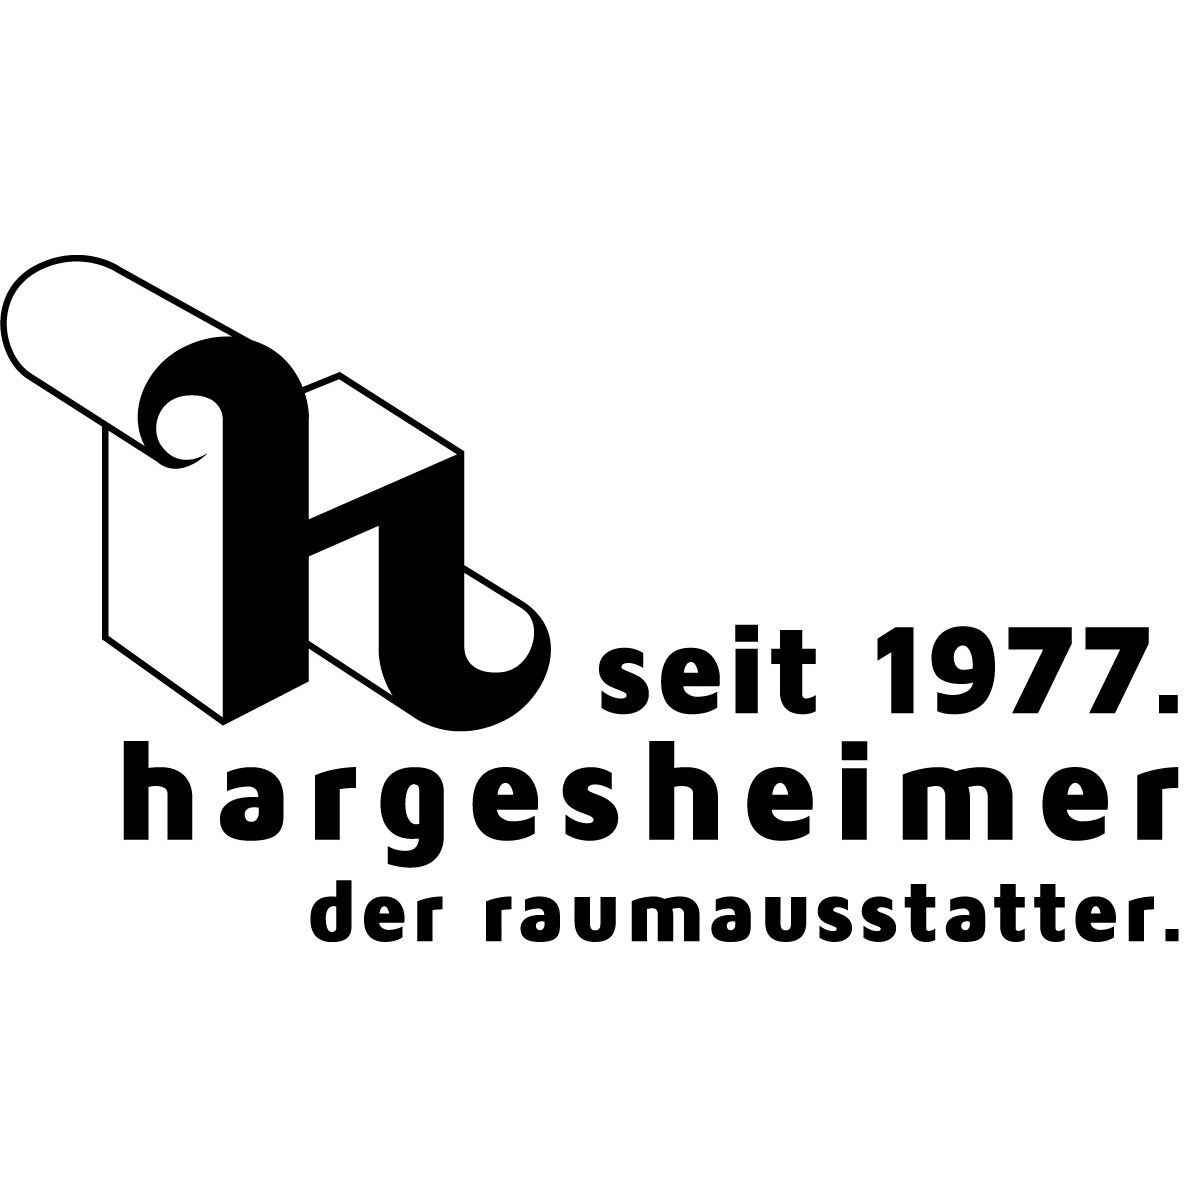 Hargesheimer Raumausstattung Inh. Sebastian Hargesheimer in München - Logo